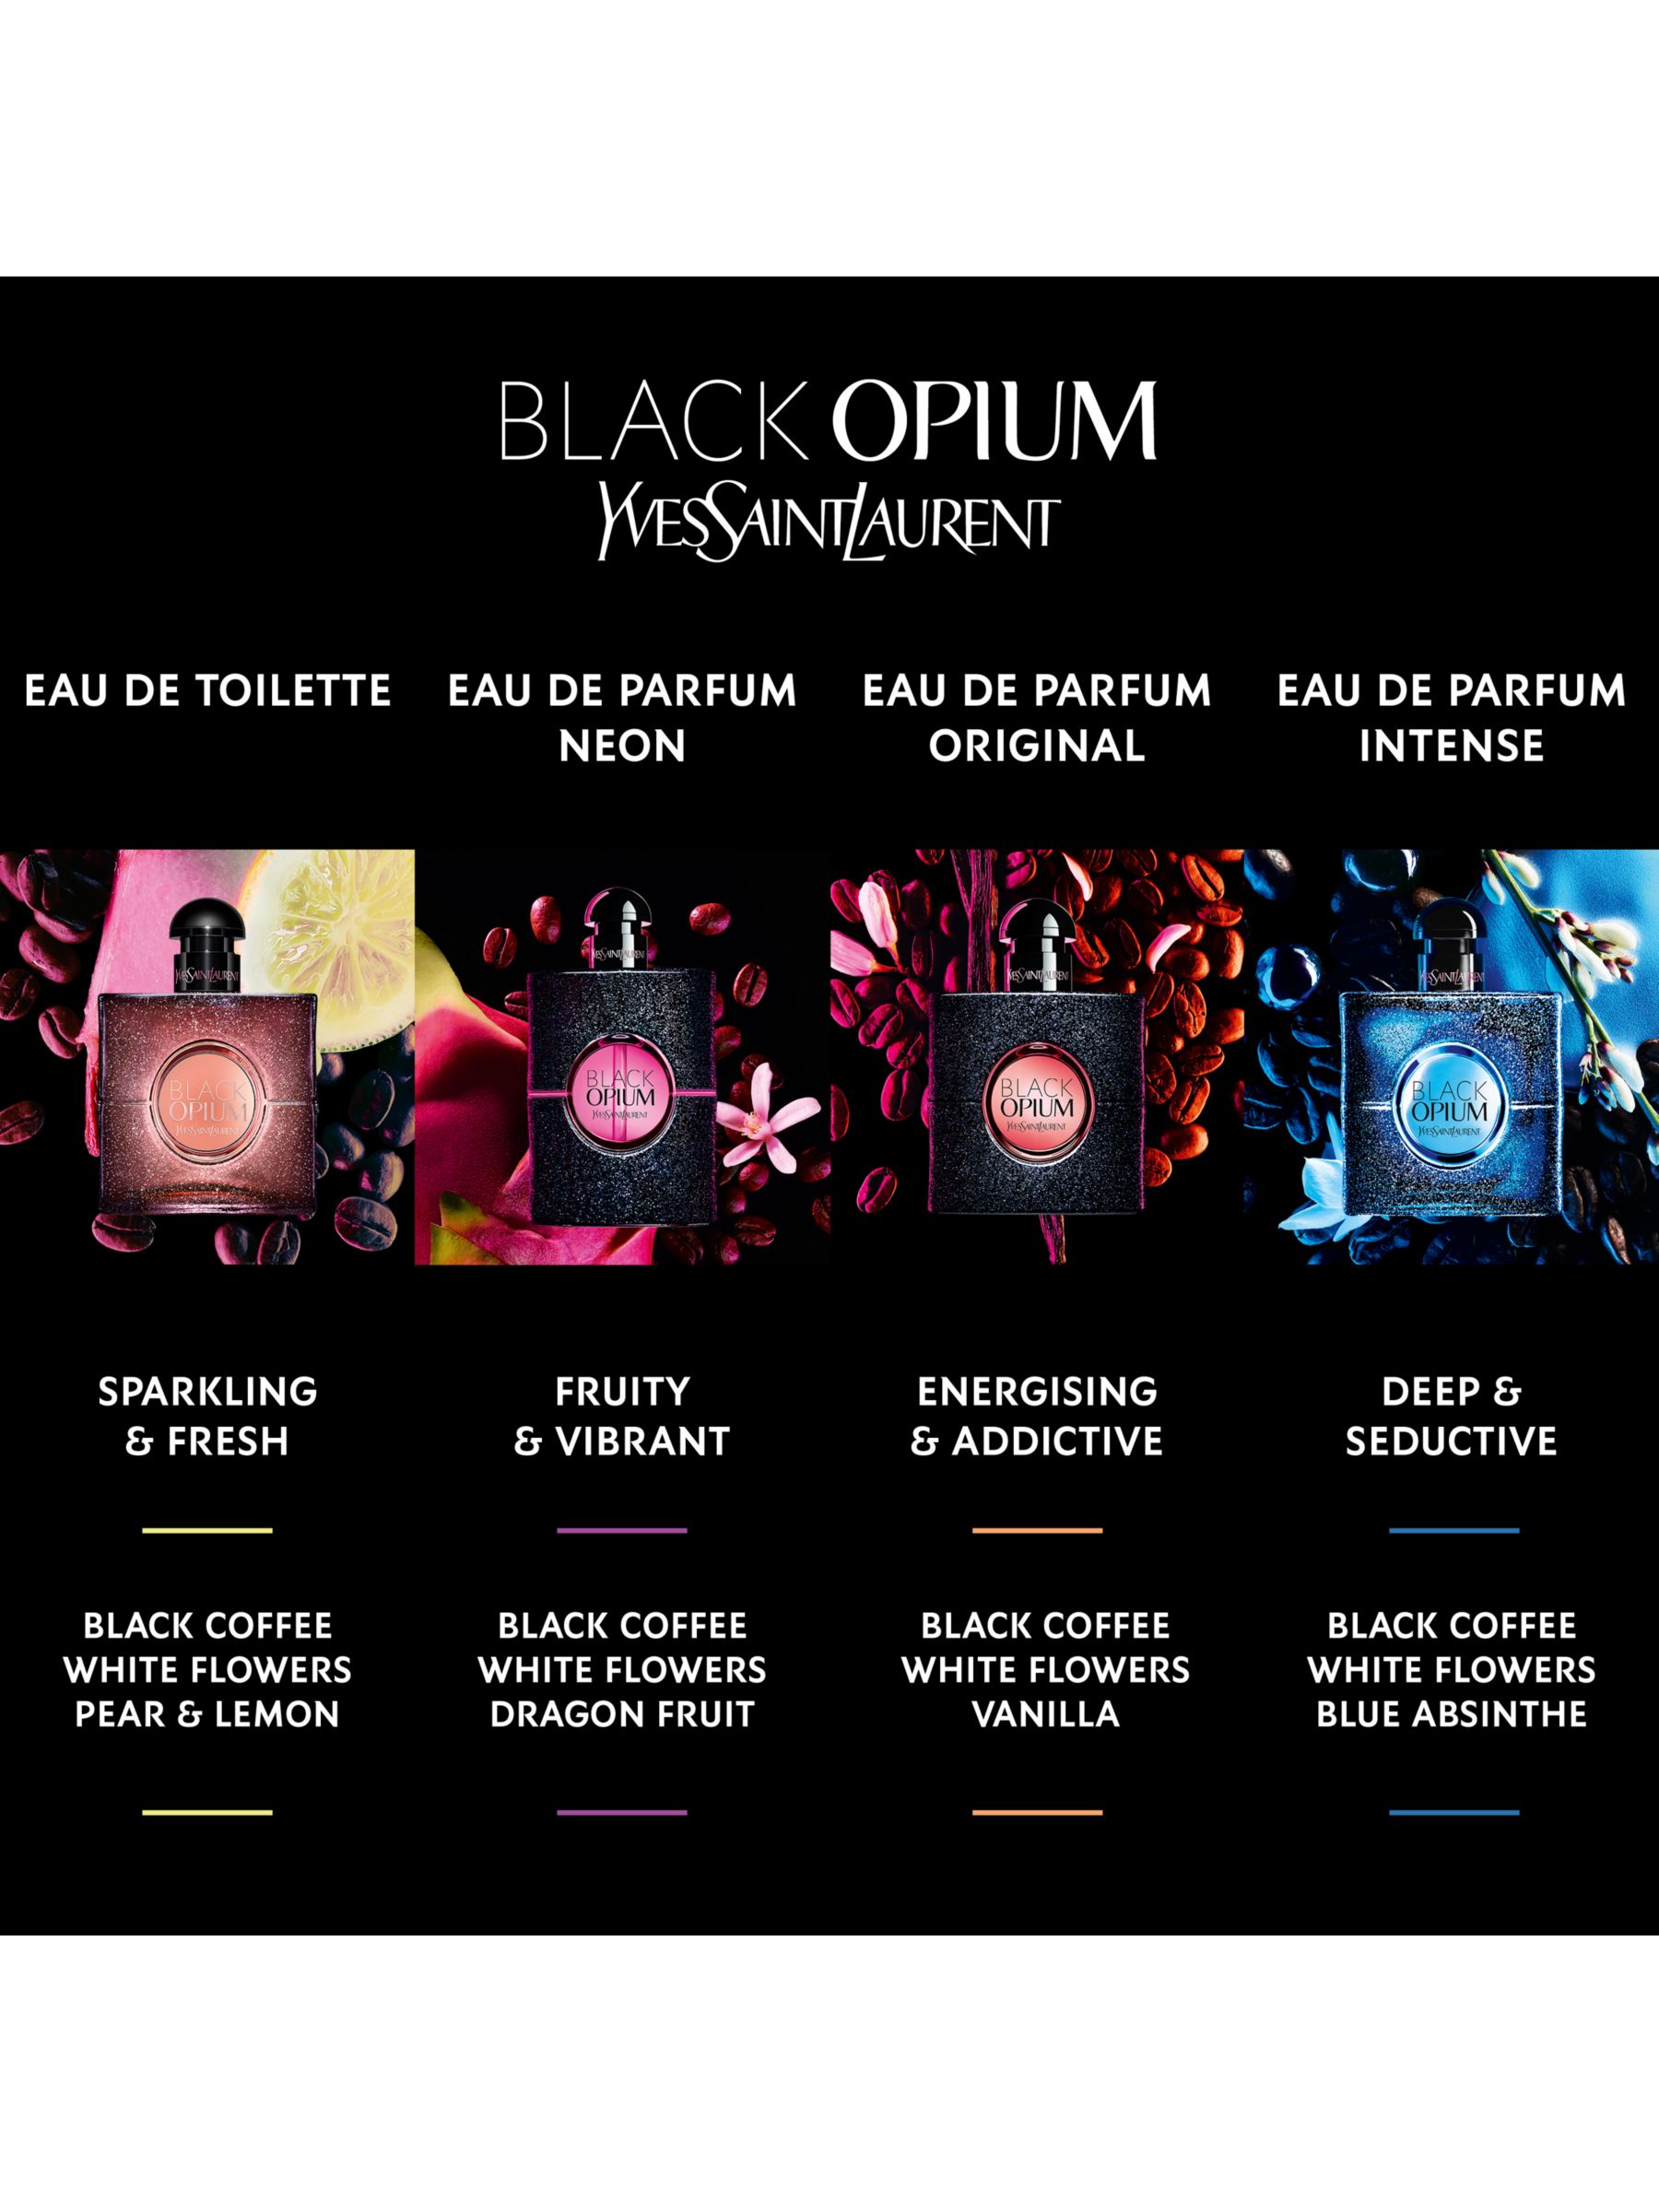 Yves Saint Laurent Black Opium Eau De Parfum Intense Spray 30ml